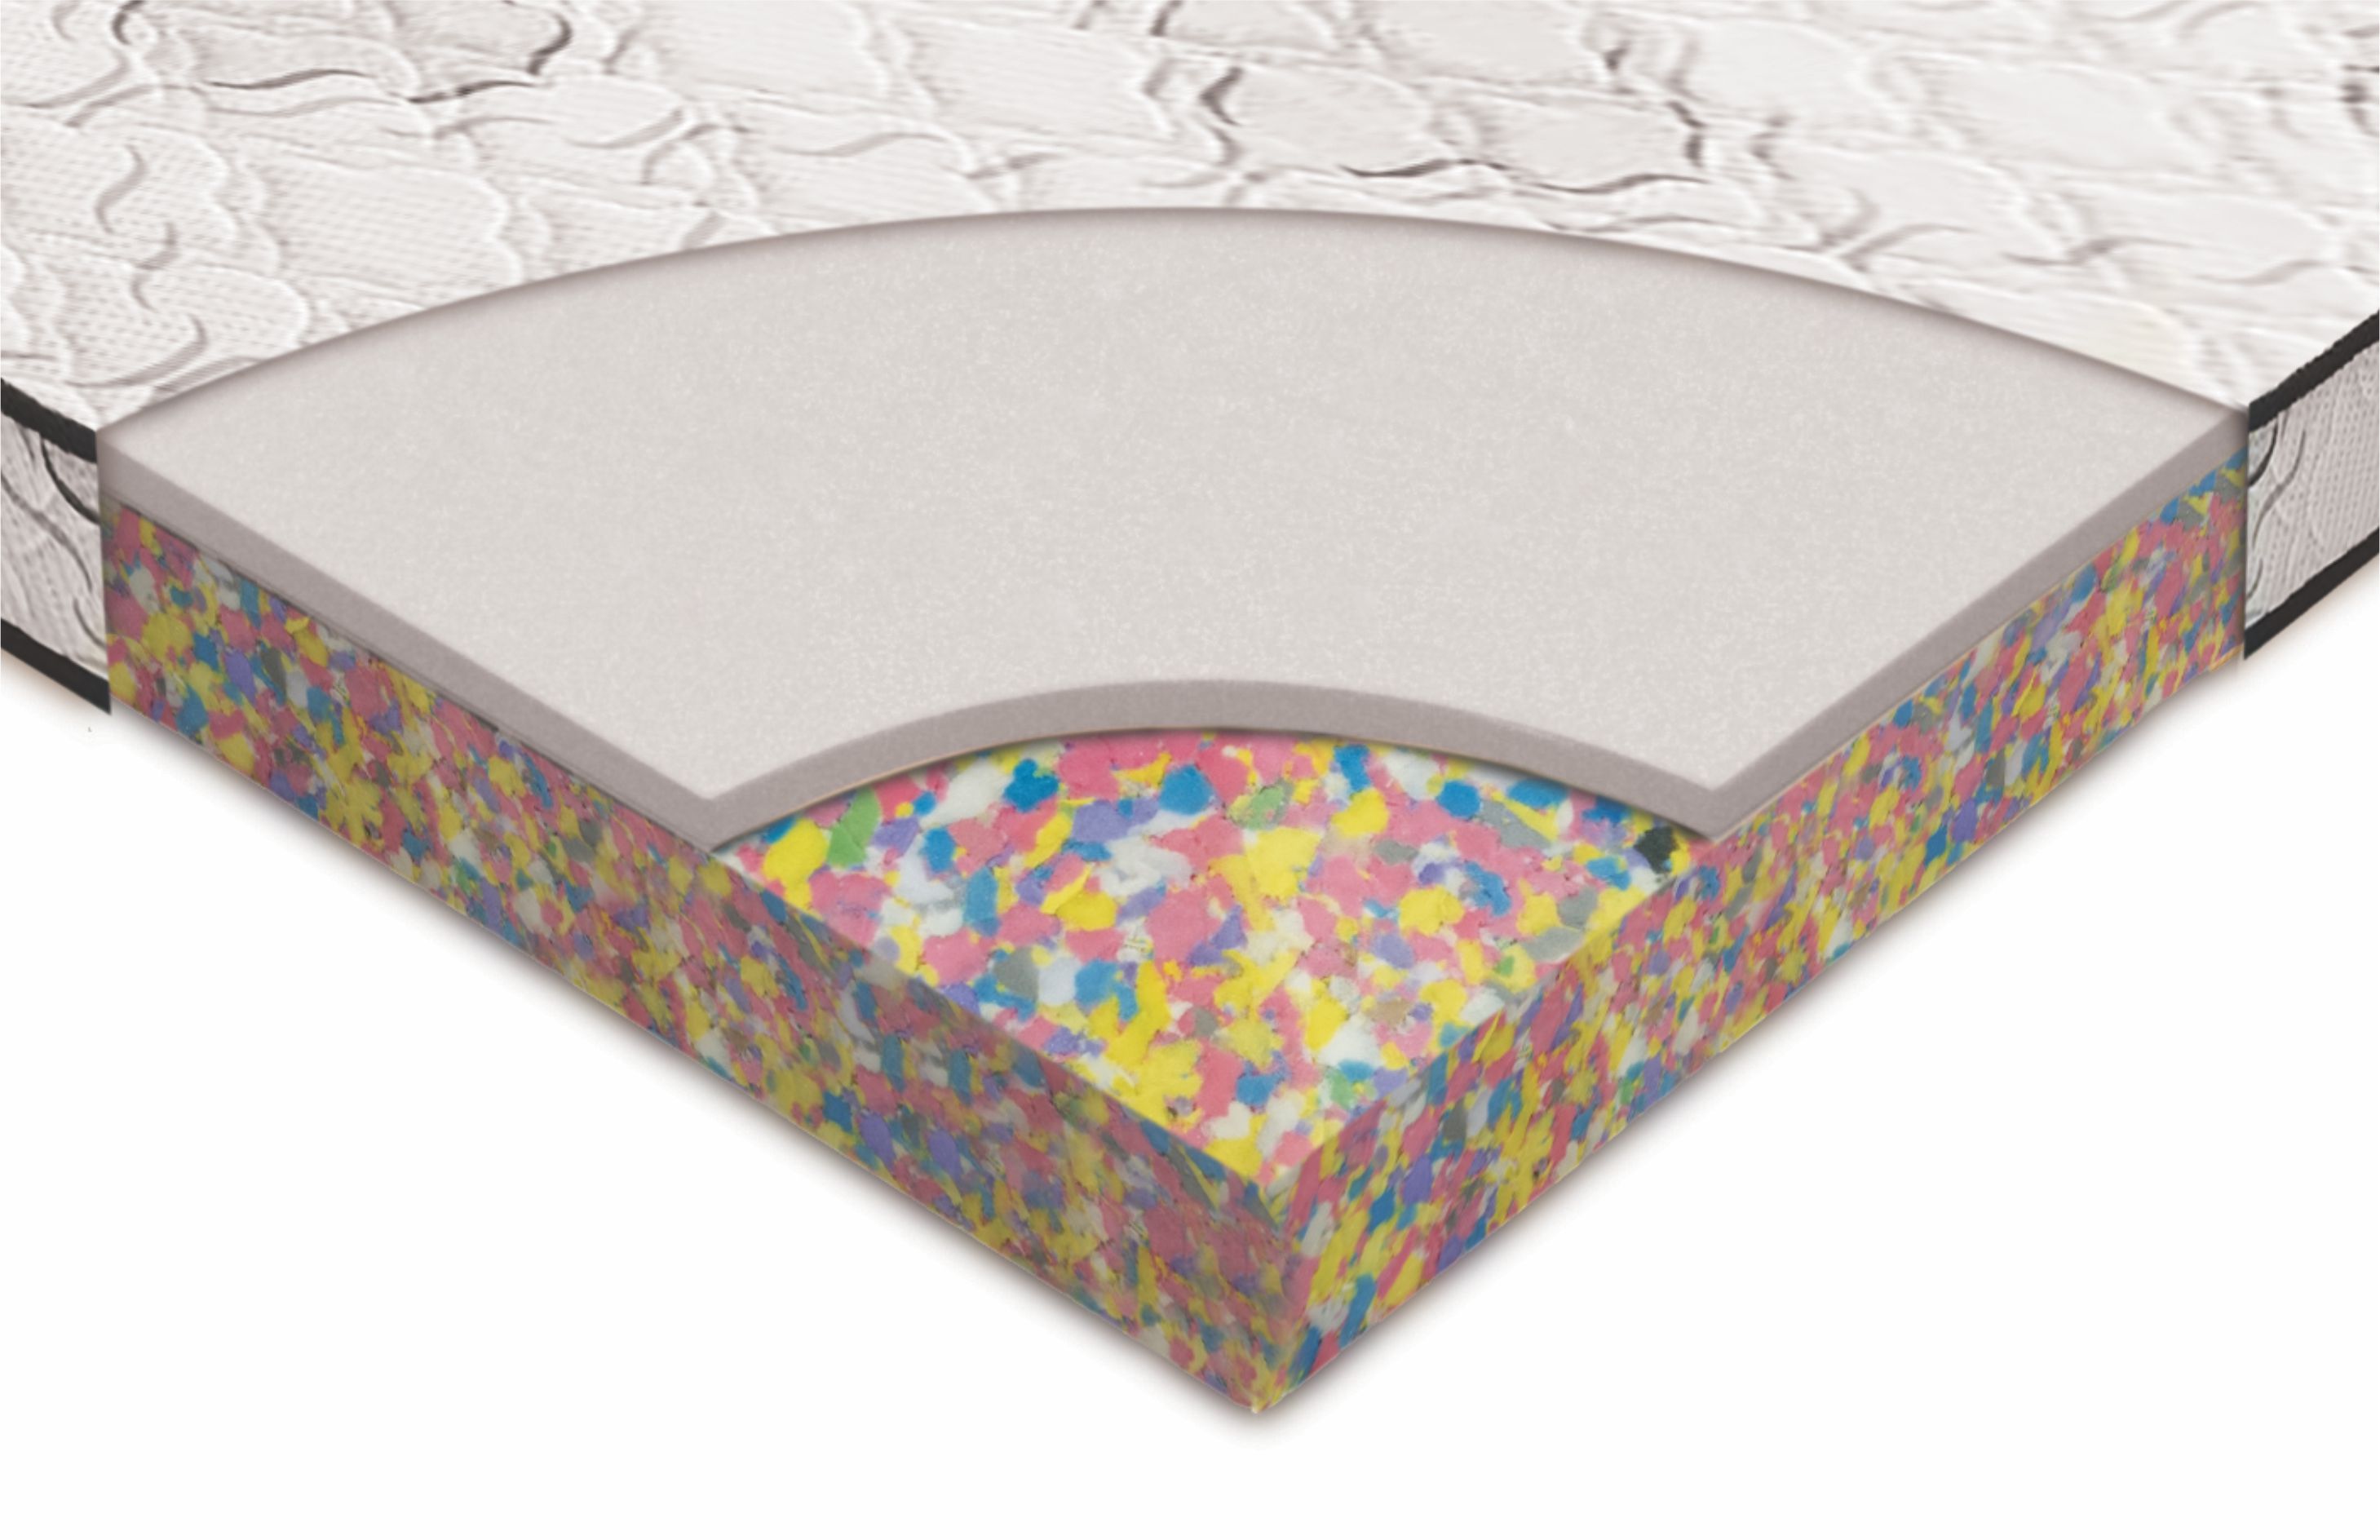 bonded foam mattress meaning